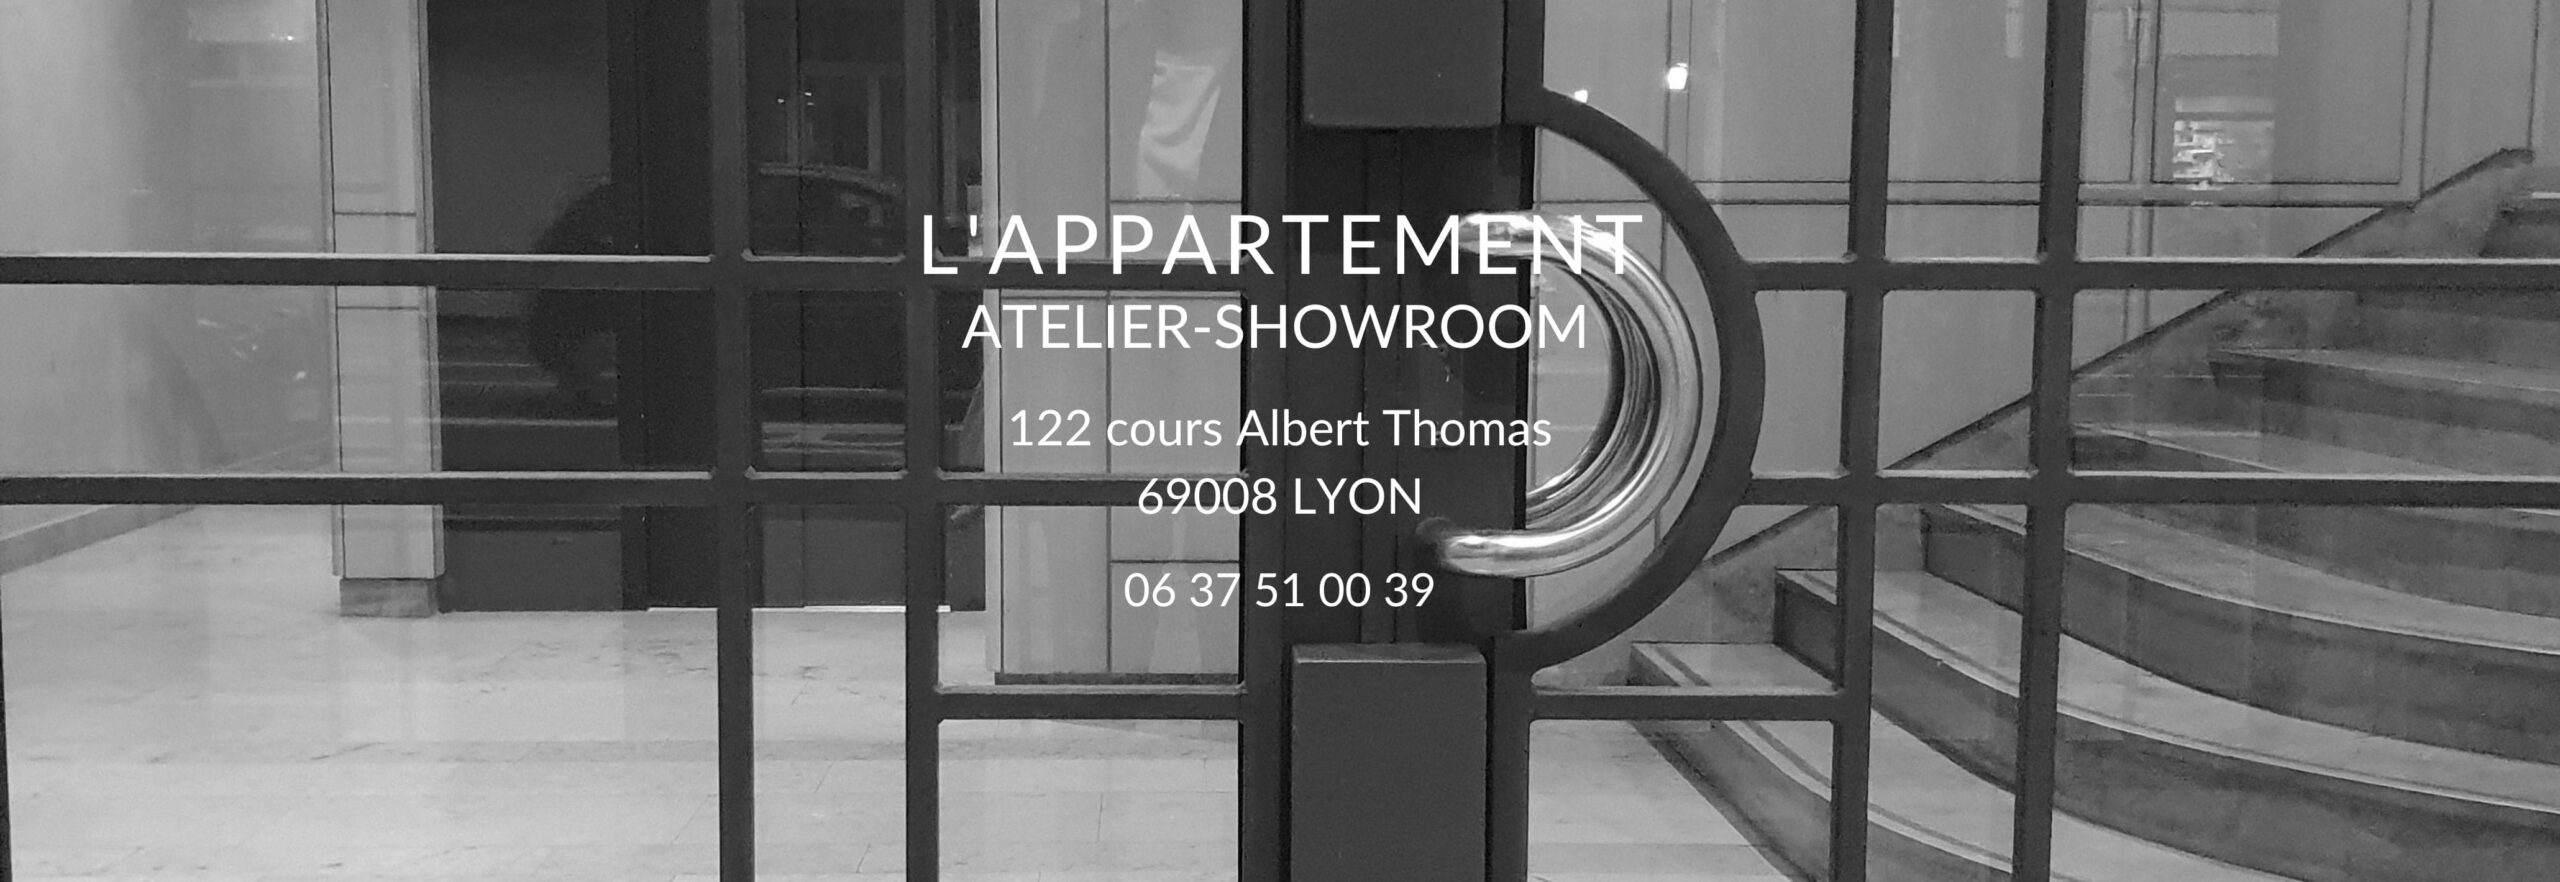 Appartement showroom atelier de Laurence Glorieux à Monplaisir Lumière.